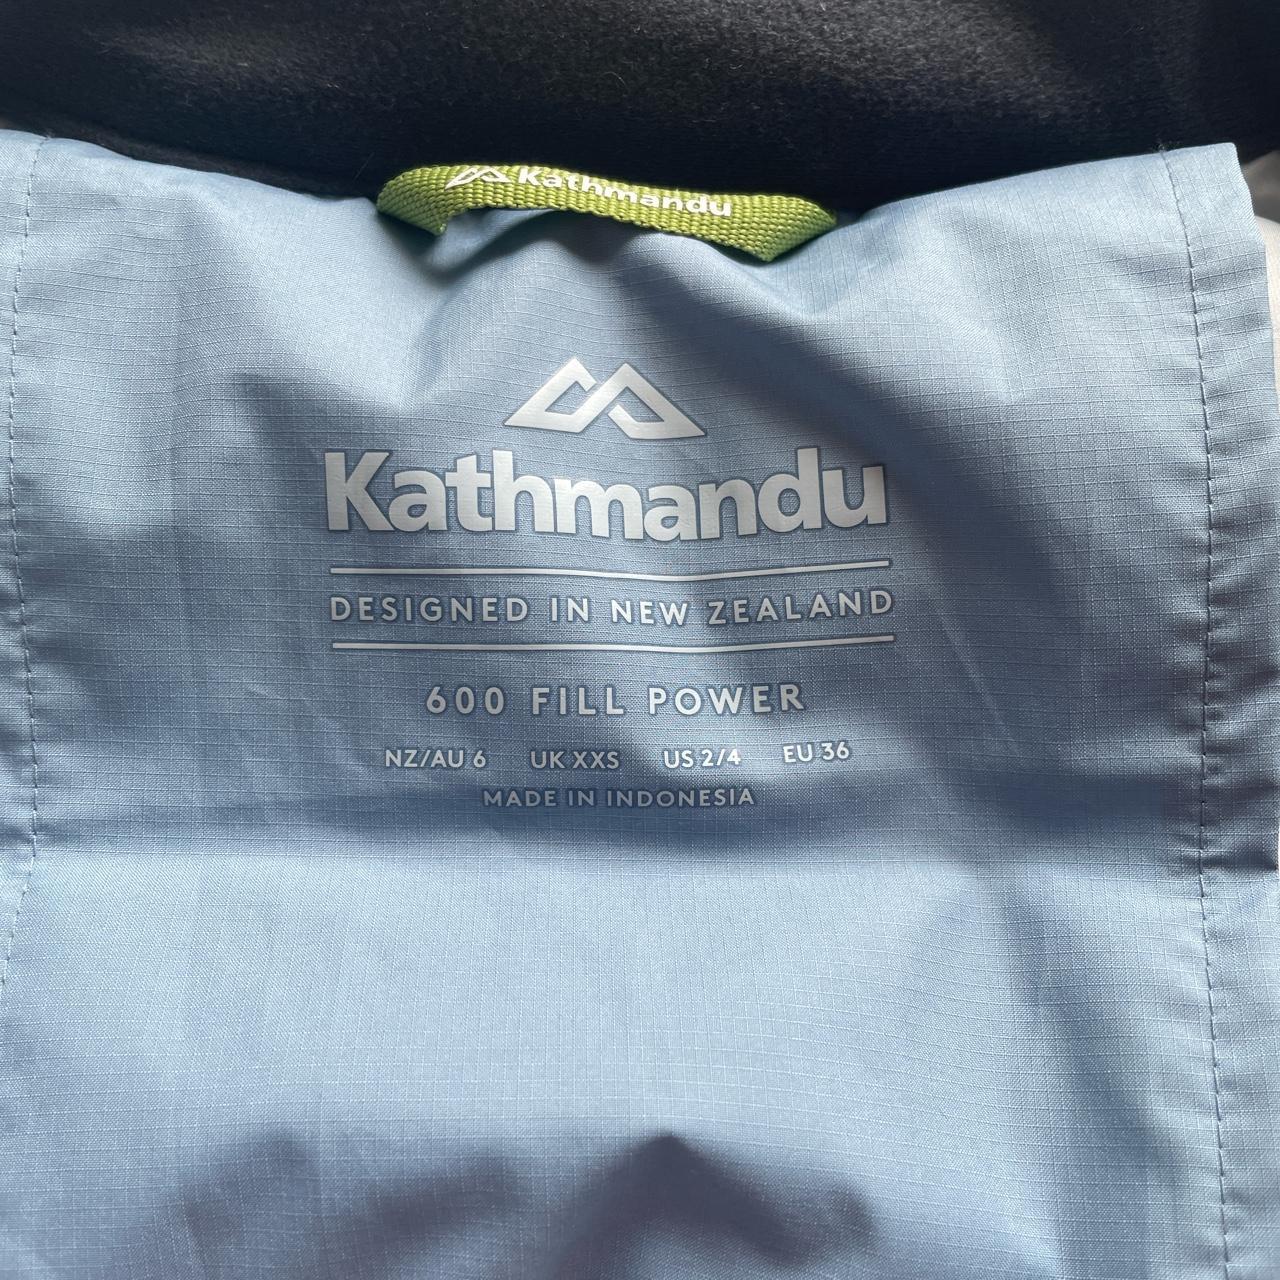 baby blue Kathmandu puffer 600 fill size xxs fits... - Depop